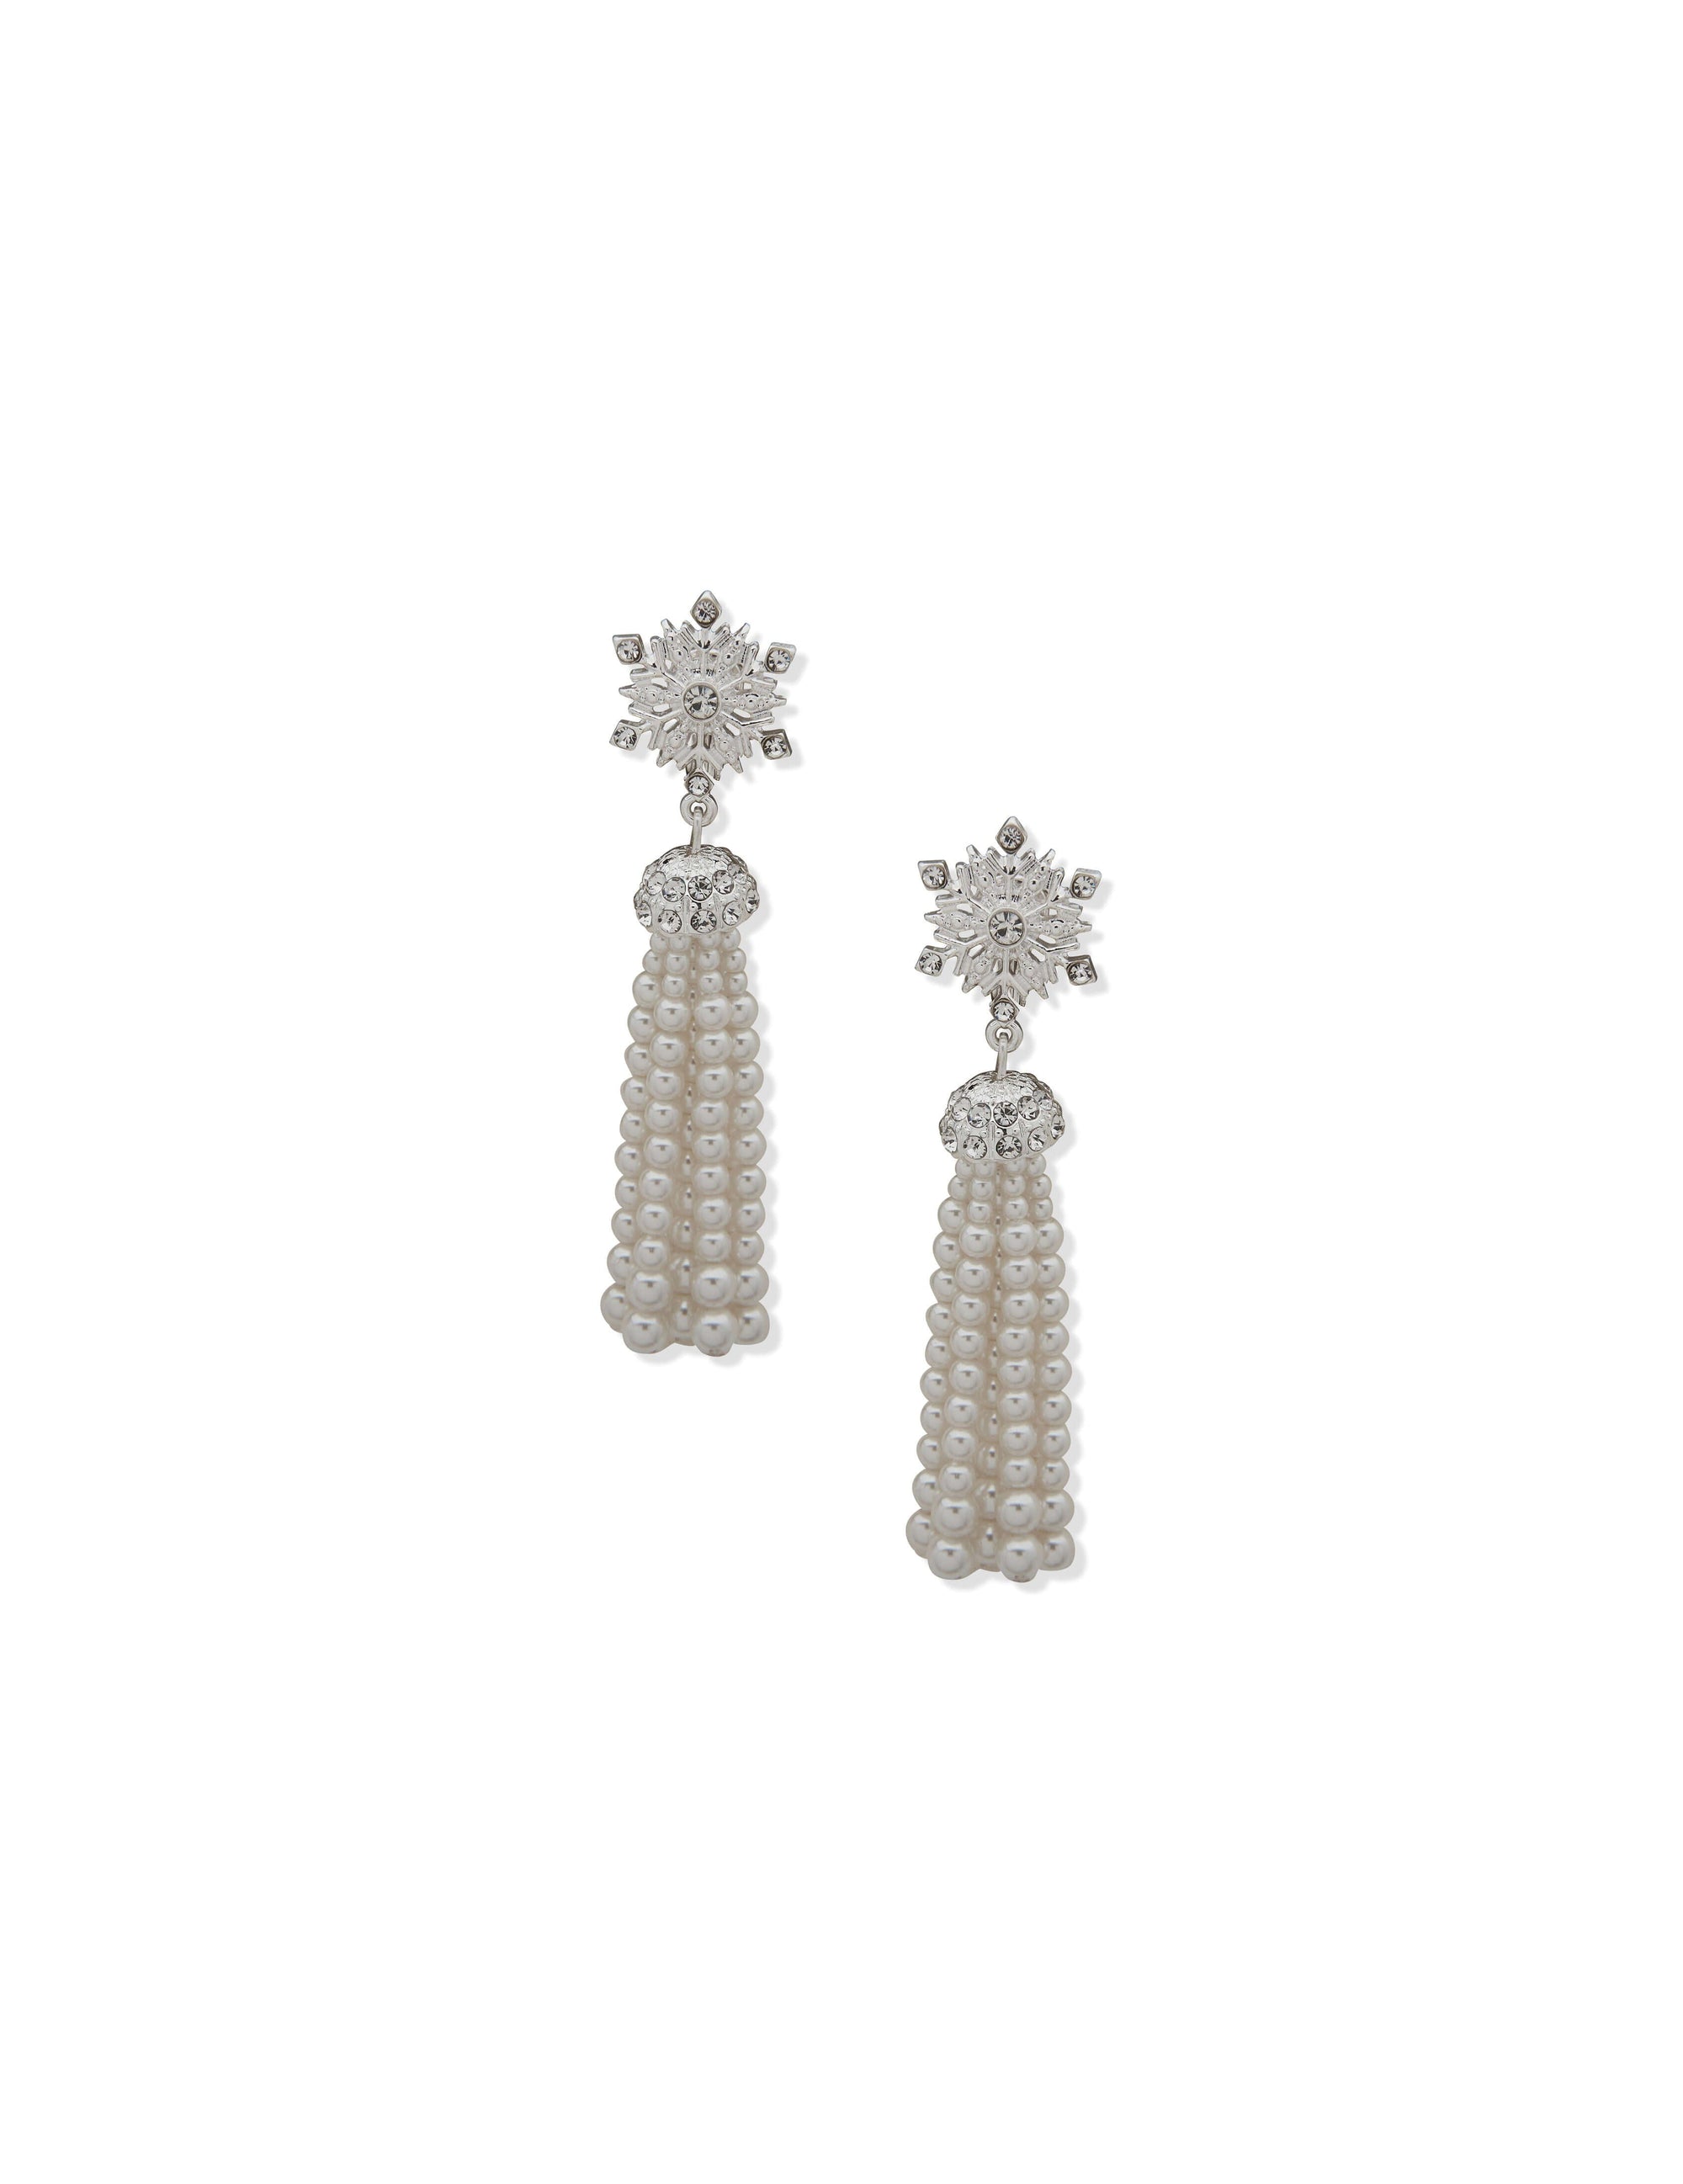 Jewelry - Pierced Earrings - Anne Klein